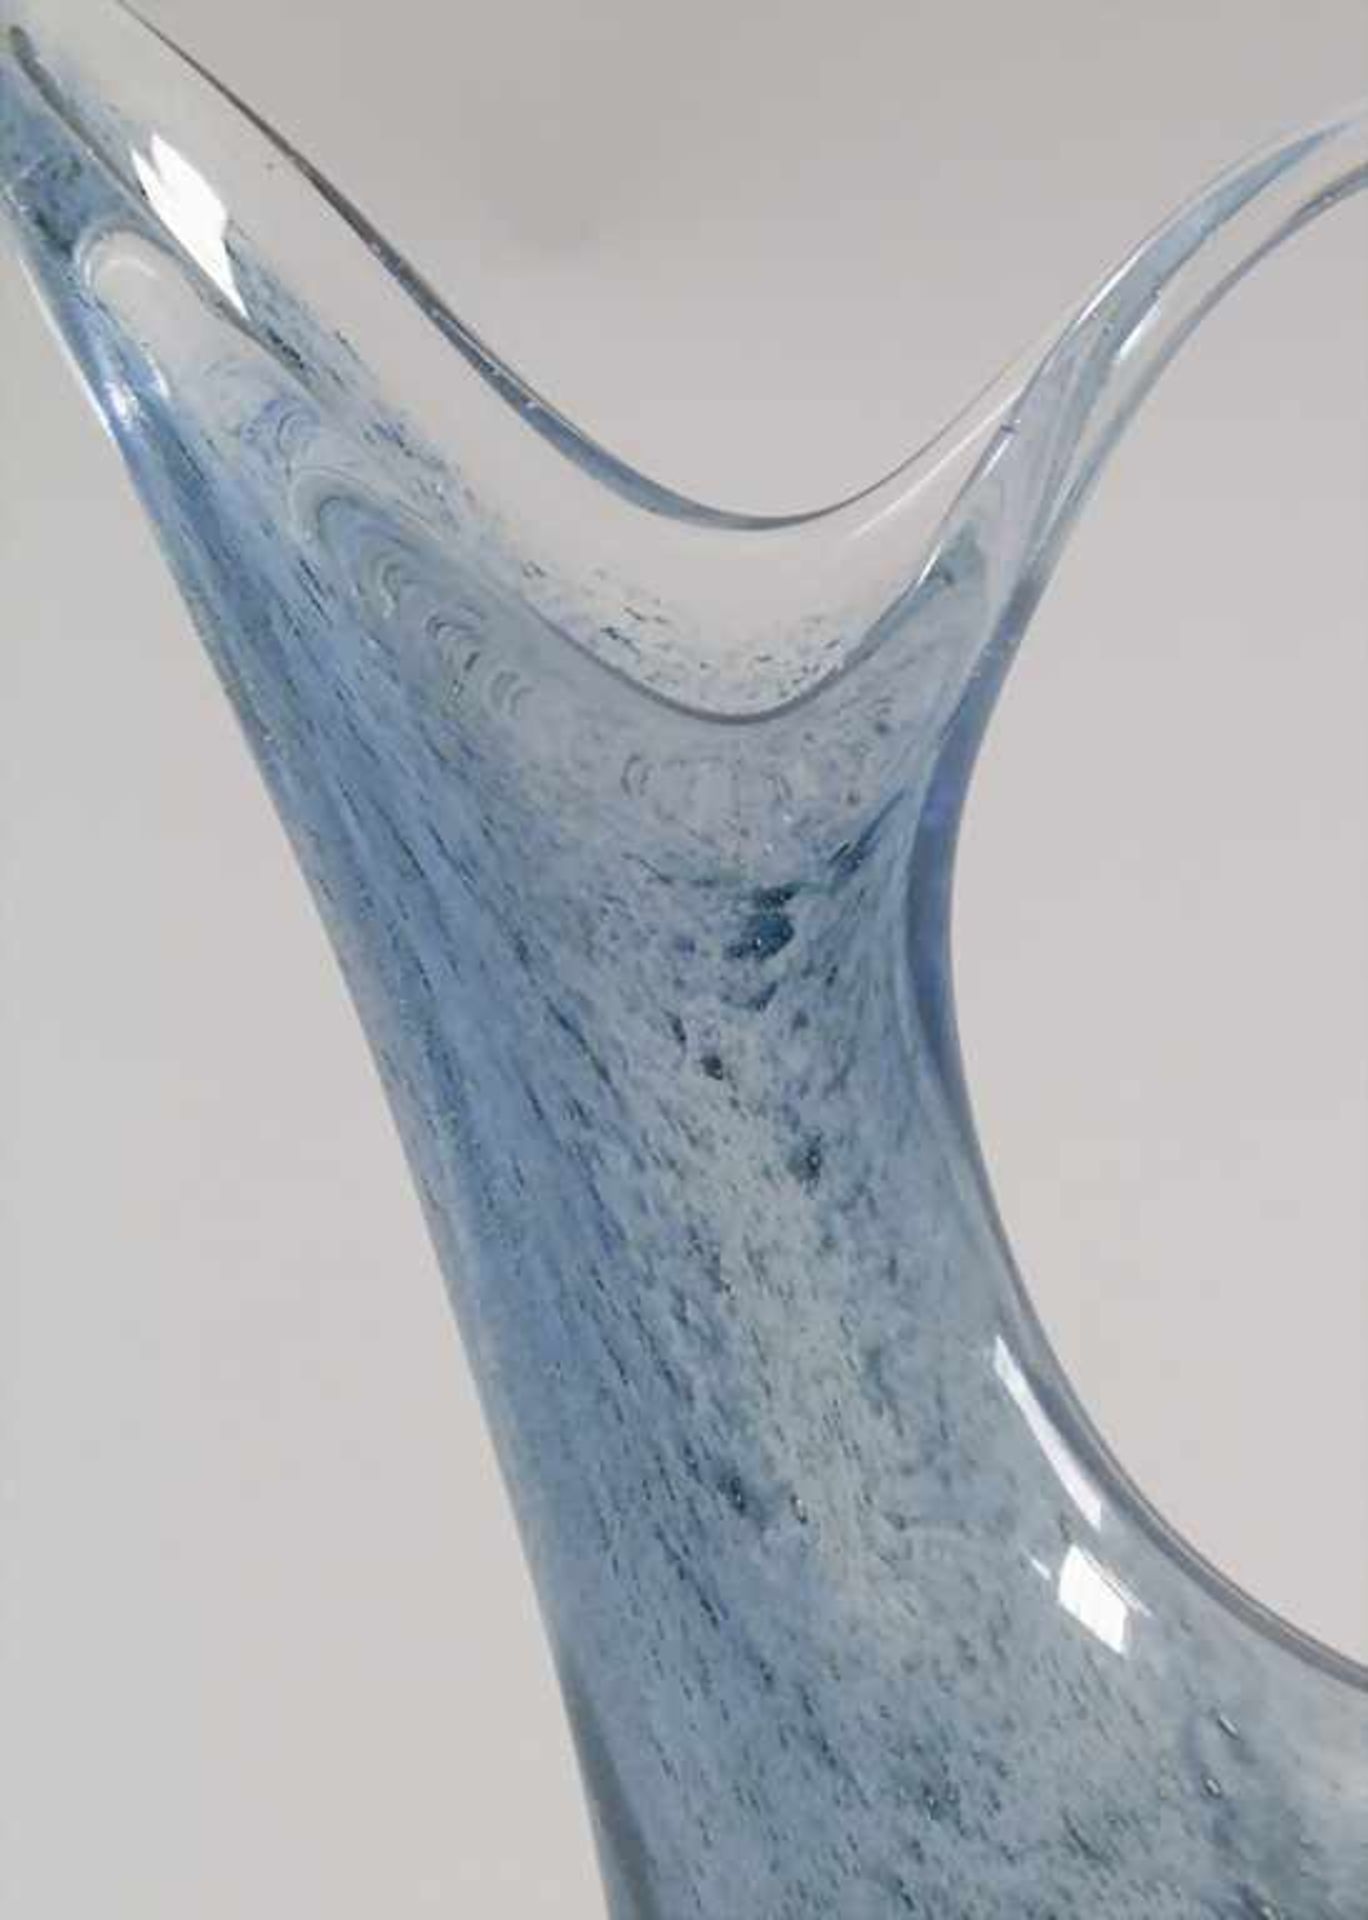 Glasziervase 'Cobalto' / A decorative vase 'Cobalto', Barovier & Toso, Entw. Ercole Barovier, - Image 7 of 7